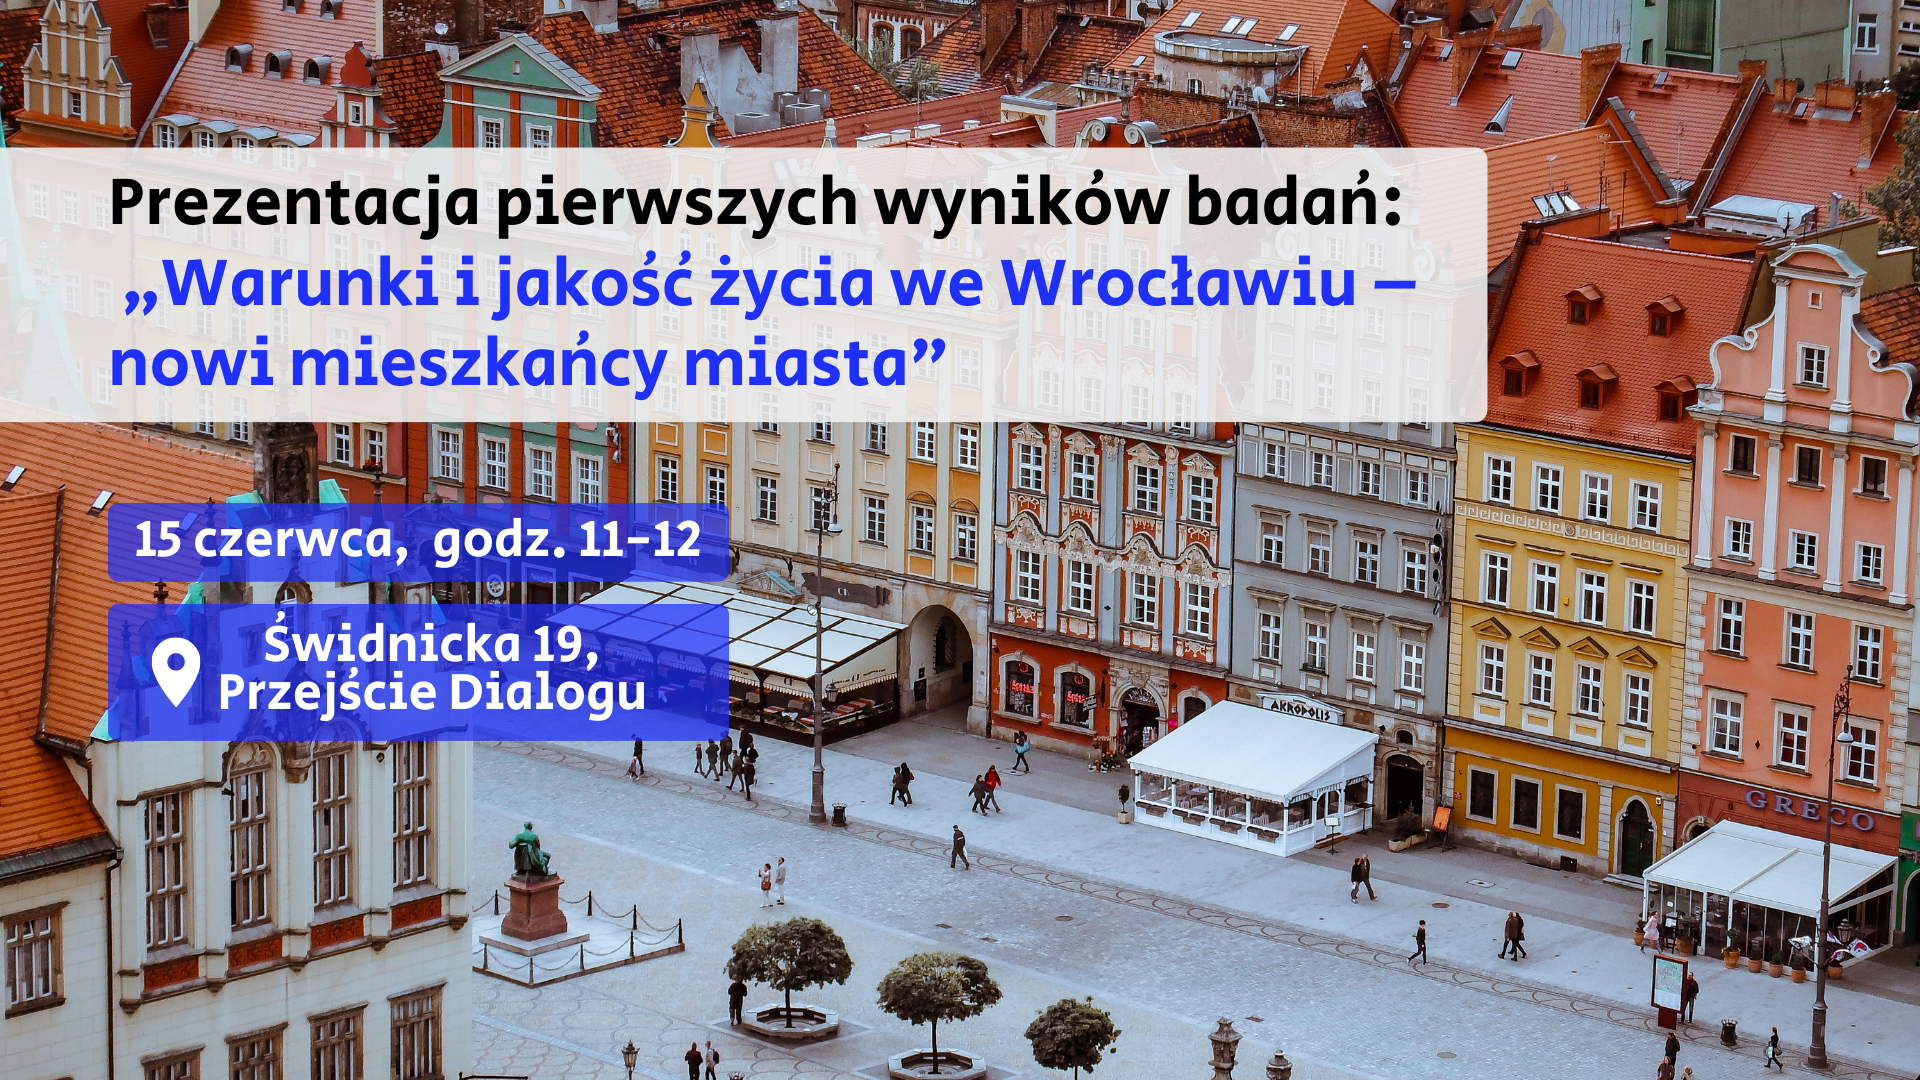 Prezentacja pierwszych wyników badań: „Warunki i jakość życia we Wrocławiu – nowi mieszkańcy miasta". Na grafice jest zdjęcie rynku Wrocławia.